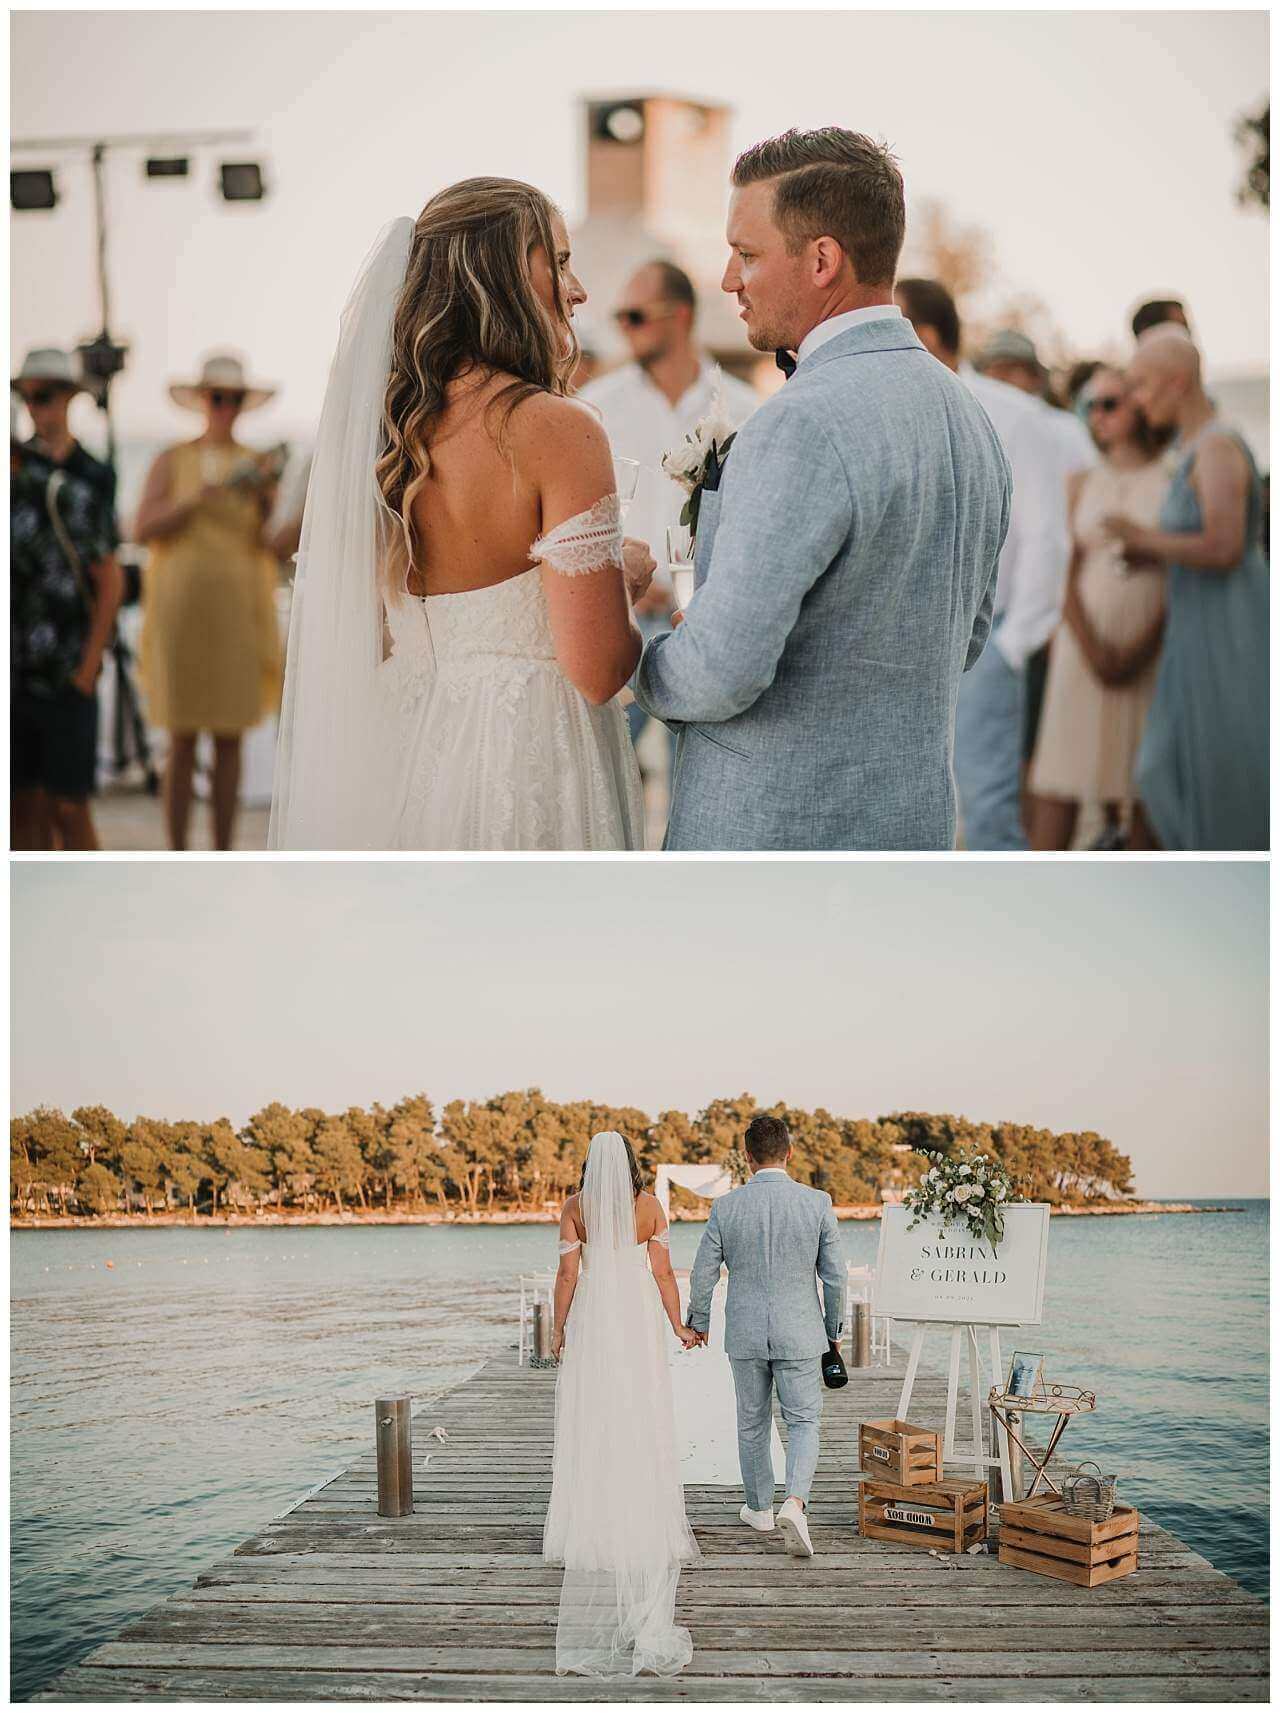 Brautpaar vor Gästen und auf Steg im Gegenlicht bei Hochzeit am Yachthafen in Kroatien